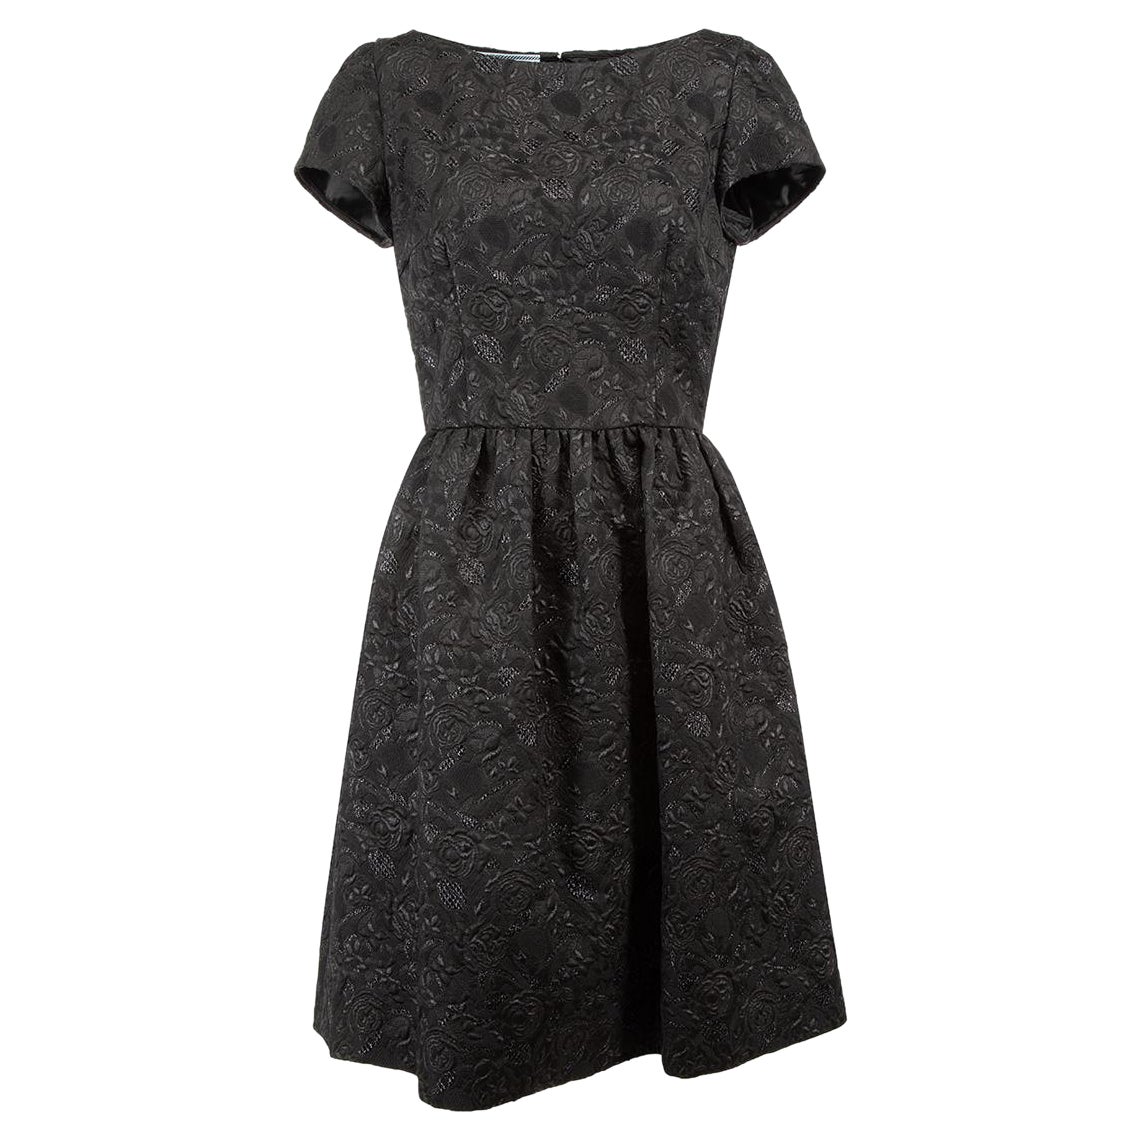 Black Metallic Thread Floral Jacquard Mini Dress Size M